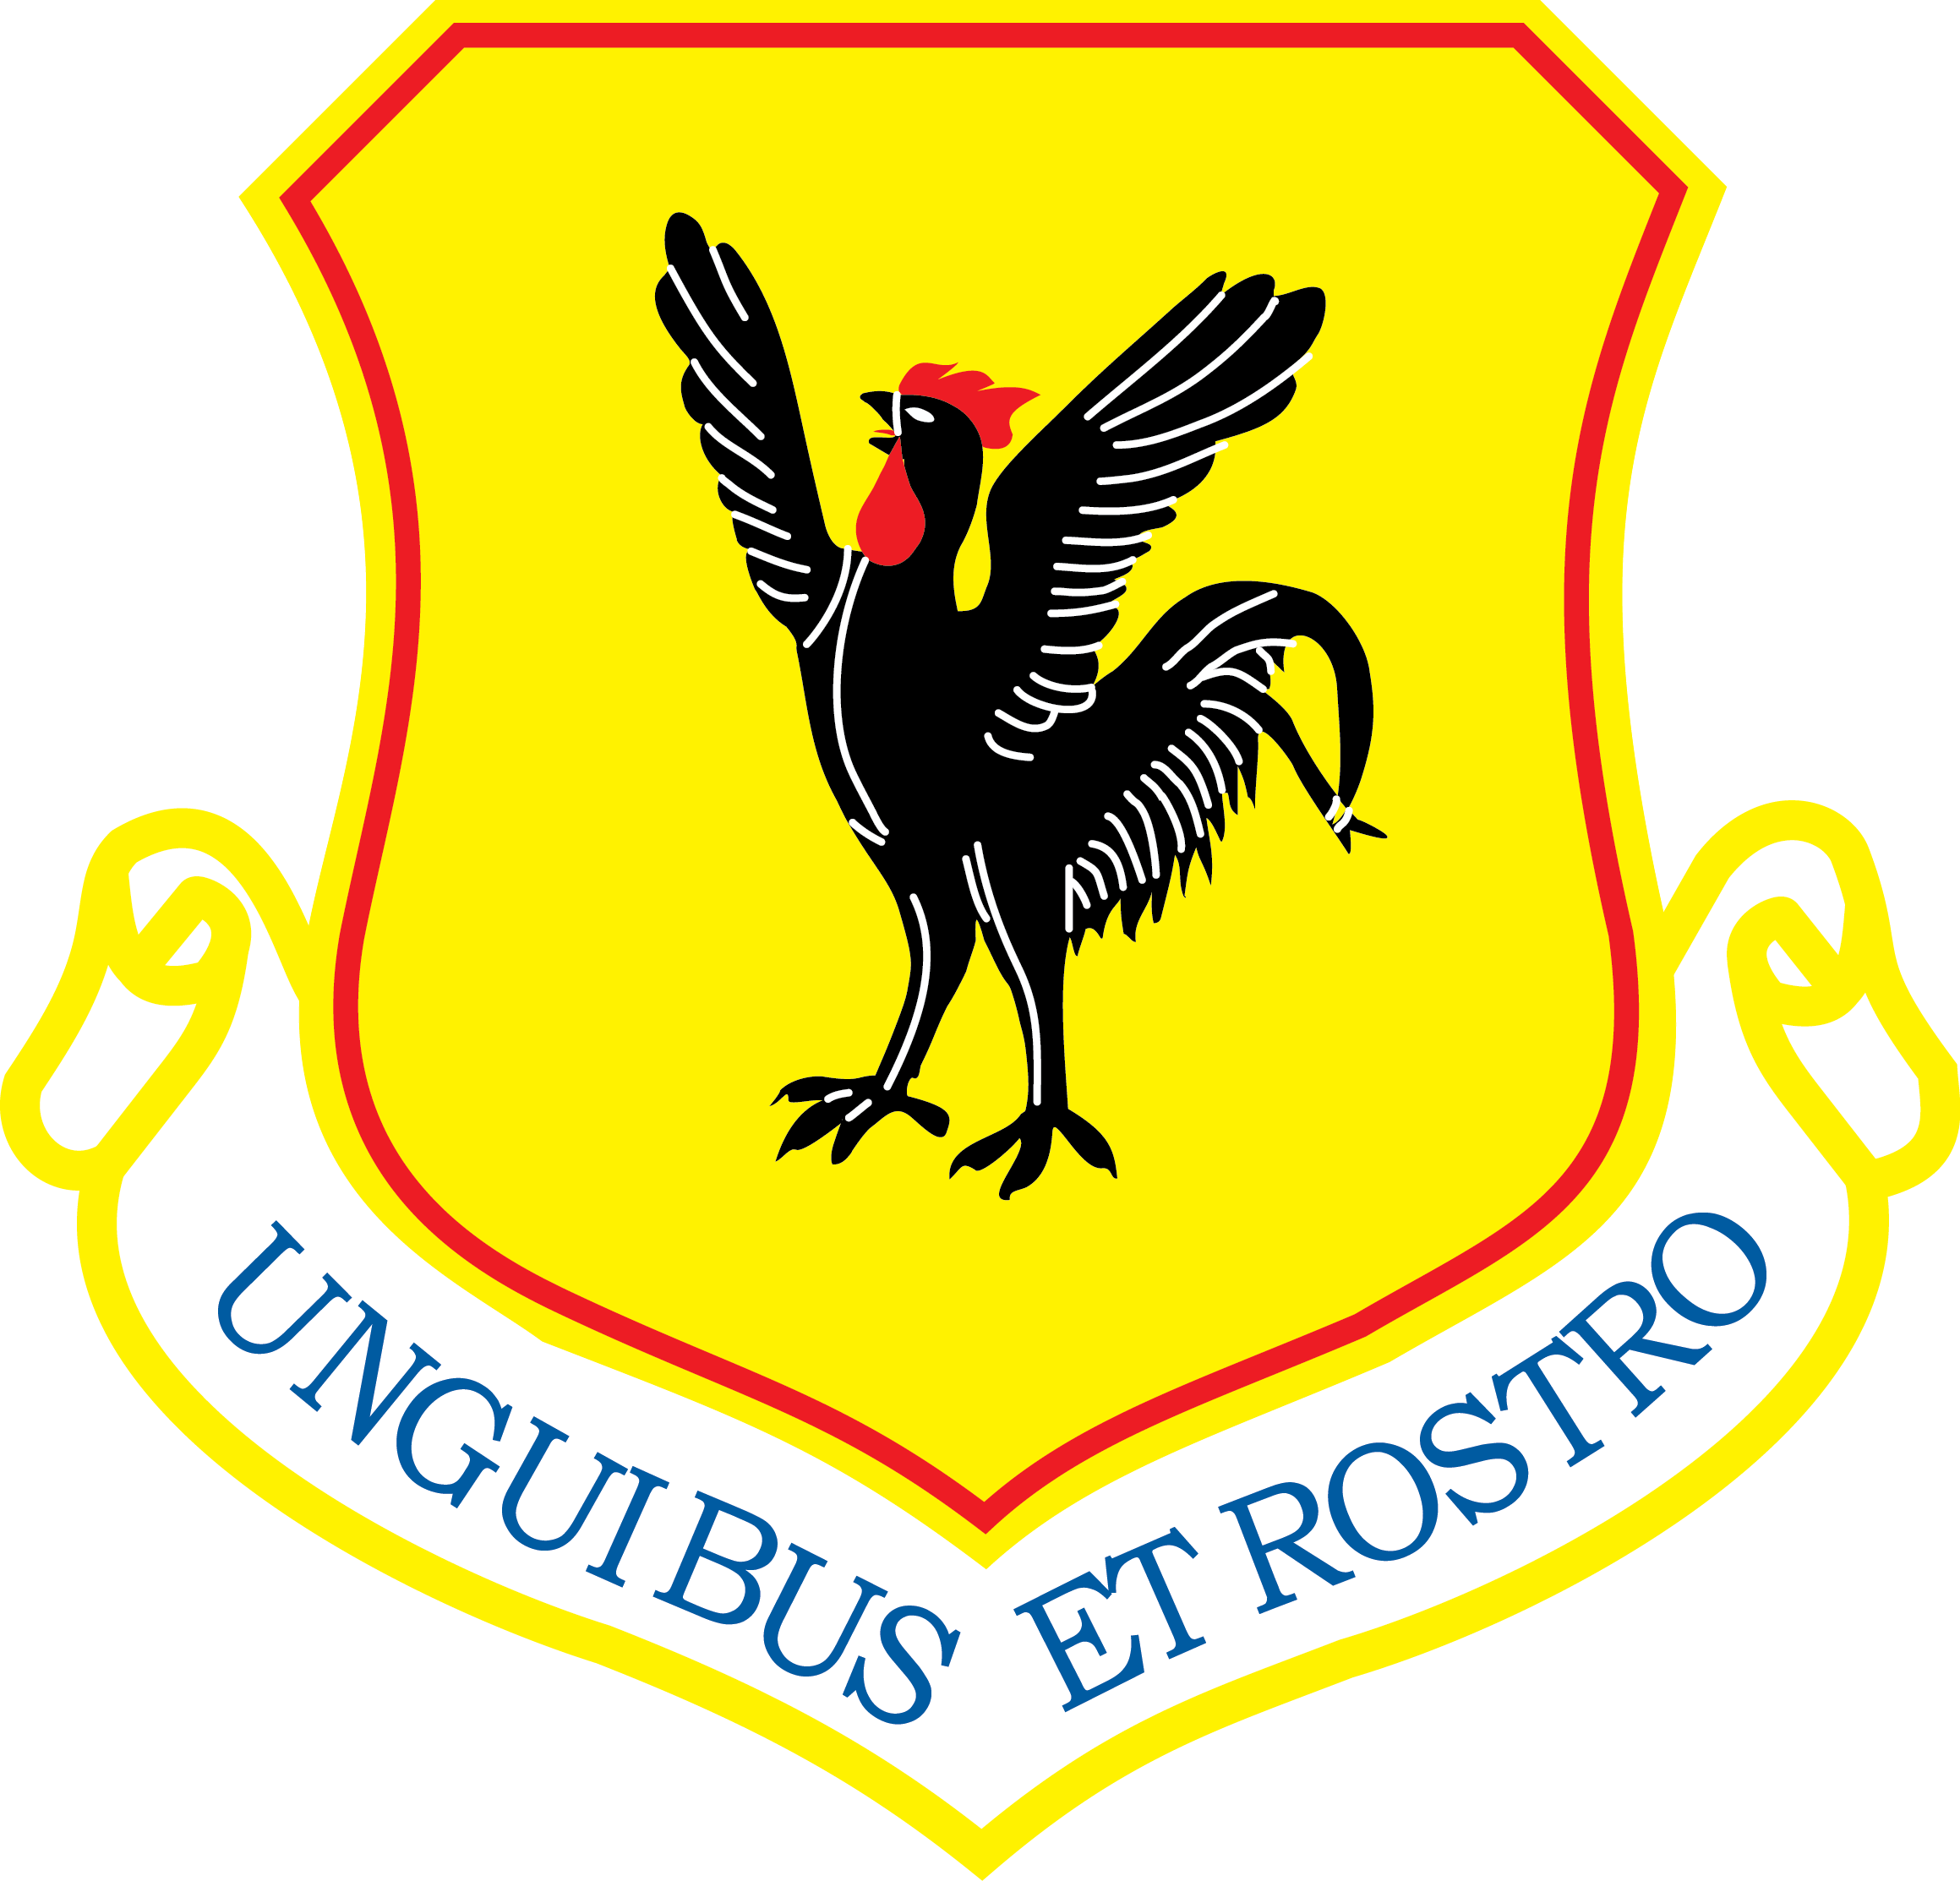 Kadena Air Base emblem